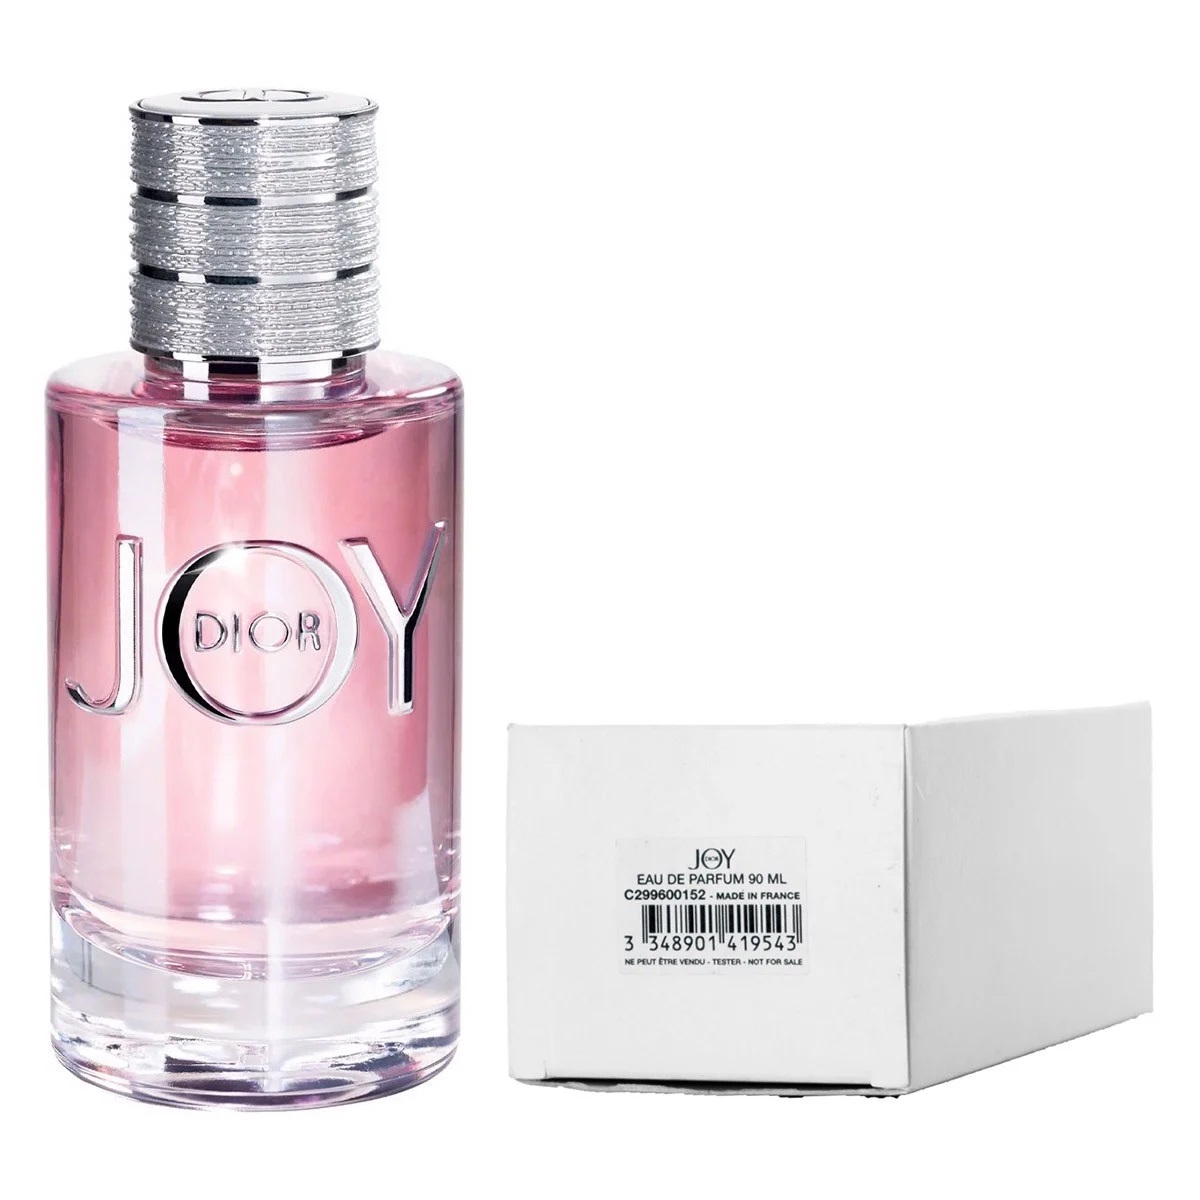 Nước Hoa Dior Joy 90ml Eau de Parfum Chính Hãng Cho Nữ